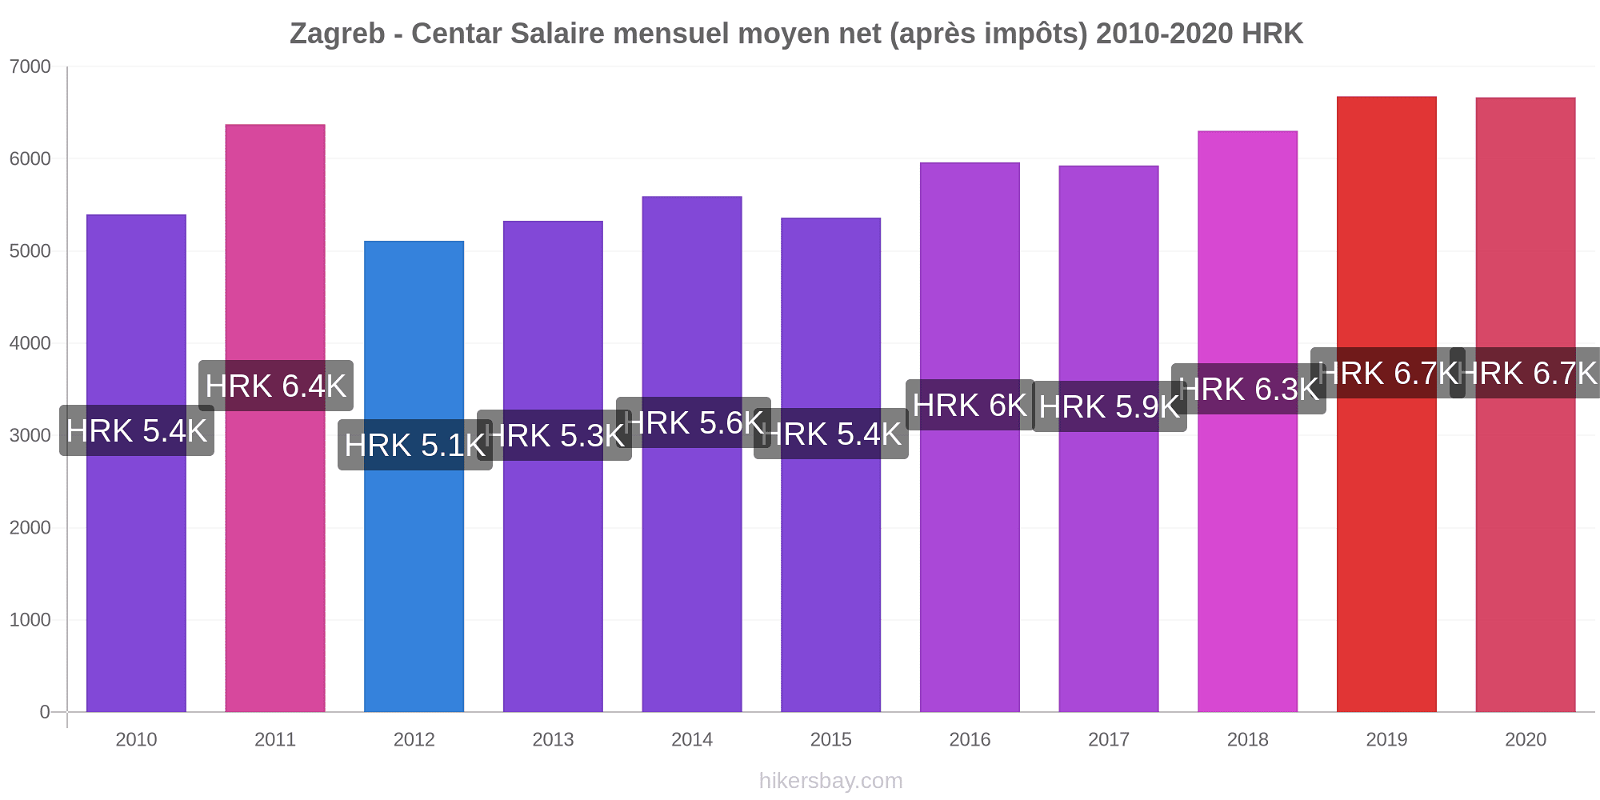 Zagreb - Centar changements de prix Salaire mensuel Net (après impôts) hikersbay.com